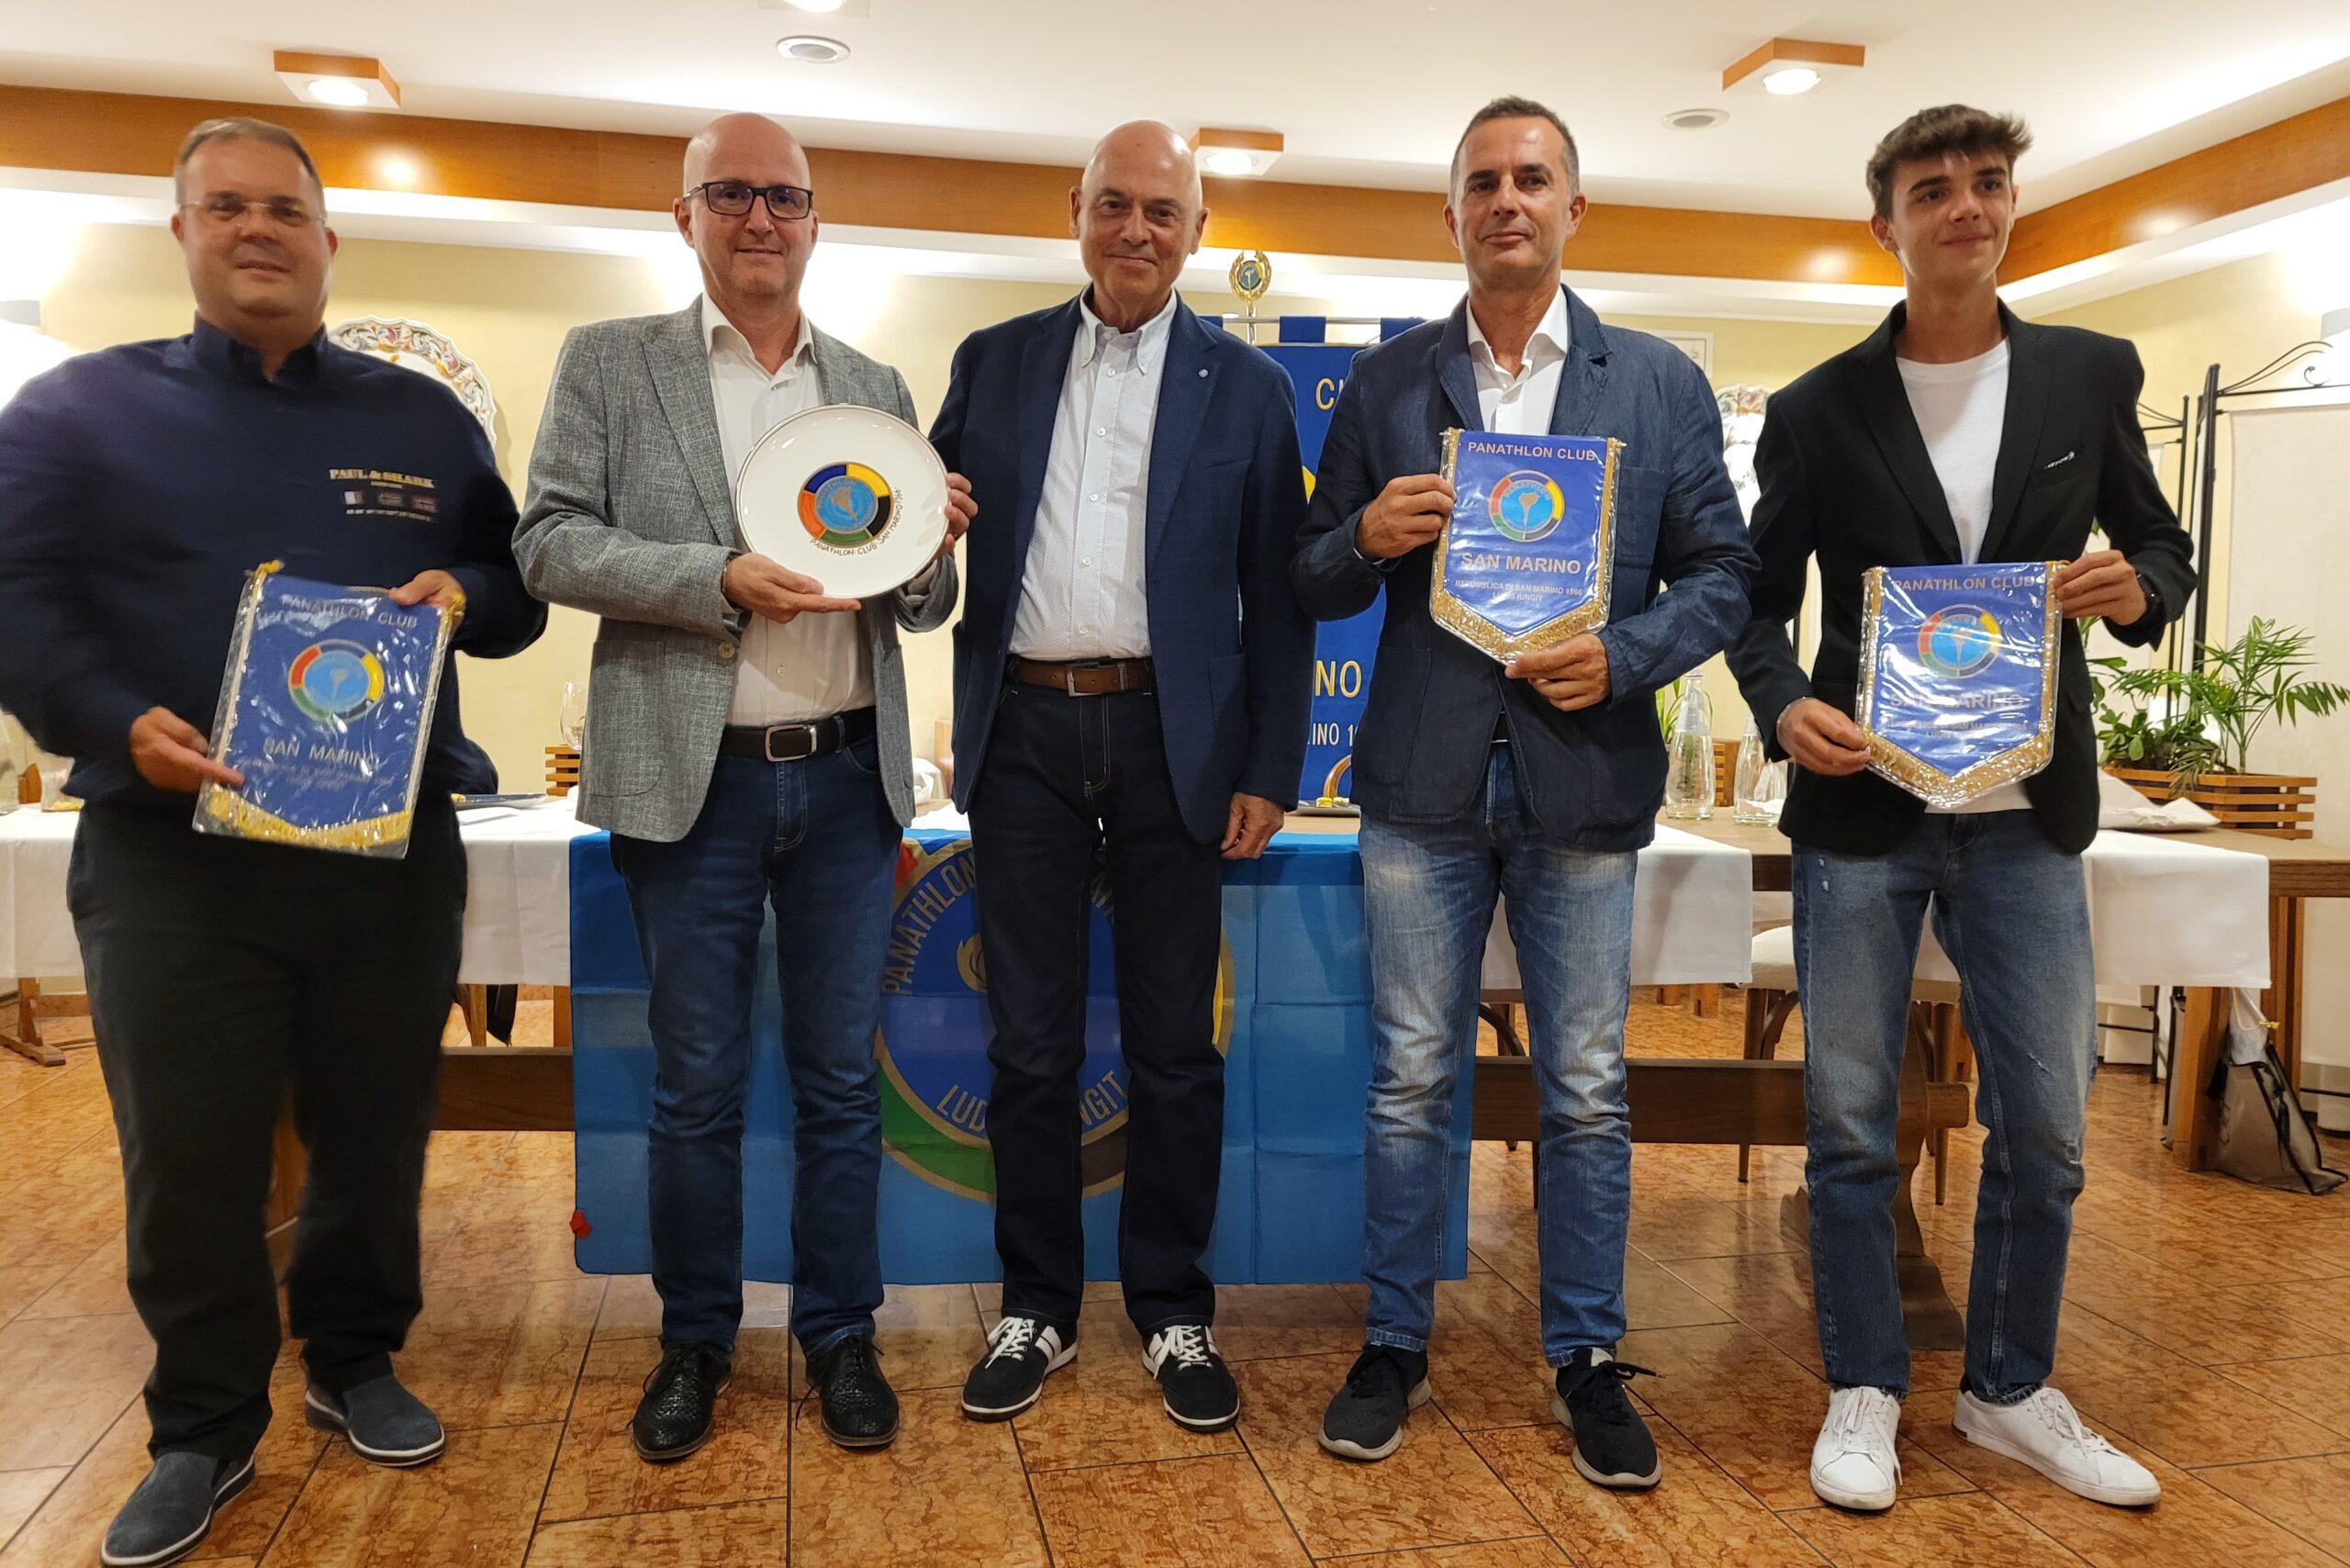 I campioni della Federazione Sammarinese Aeronautica ospiti del Panathlon Club di San Marino